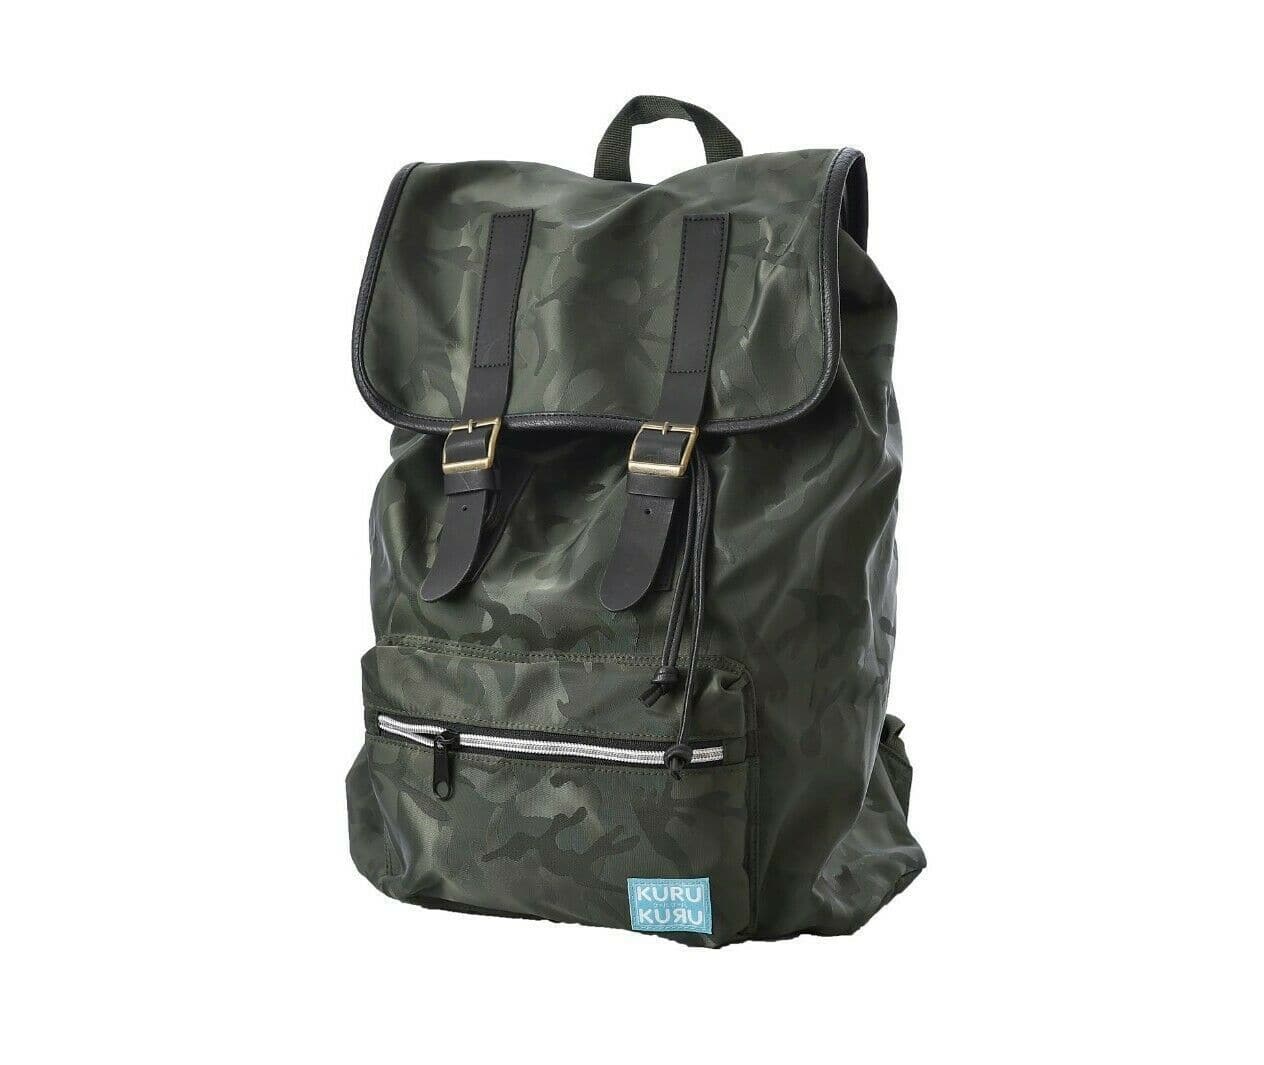 Kuru Kuru クールクール Throb Backpack Bag Camo Green Twill VM-81010